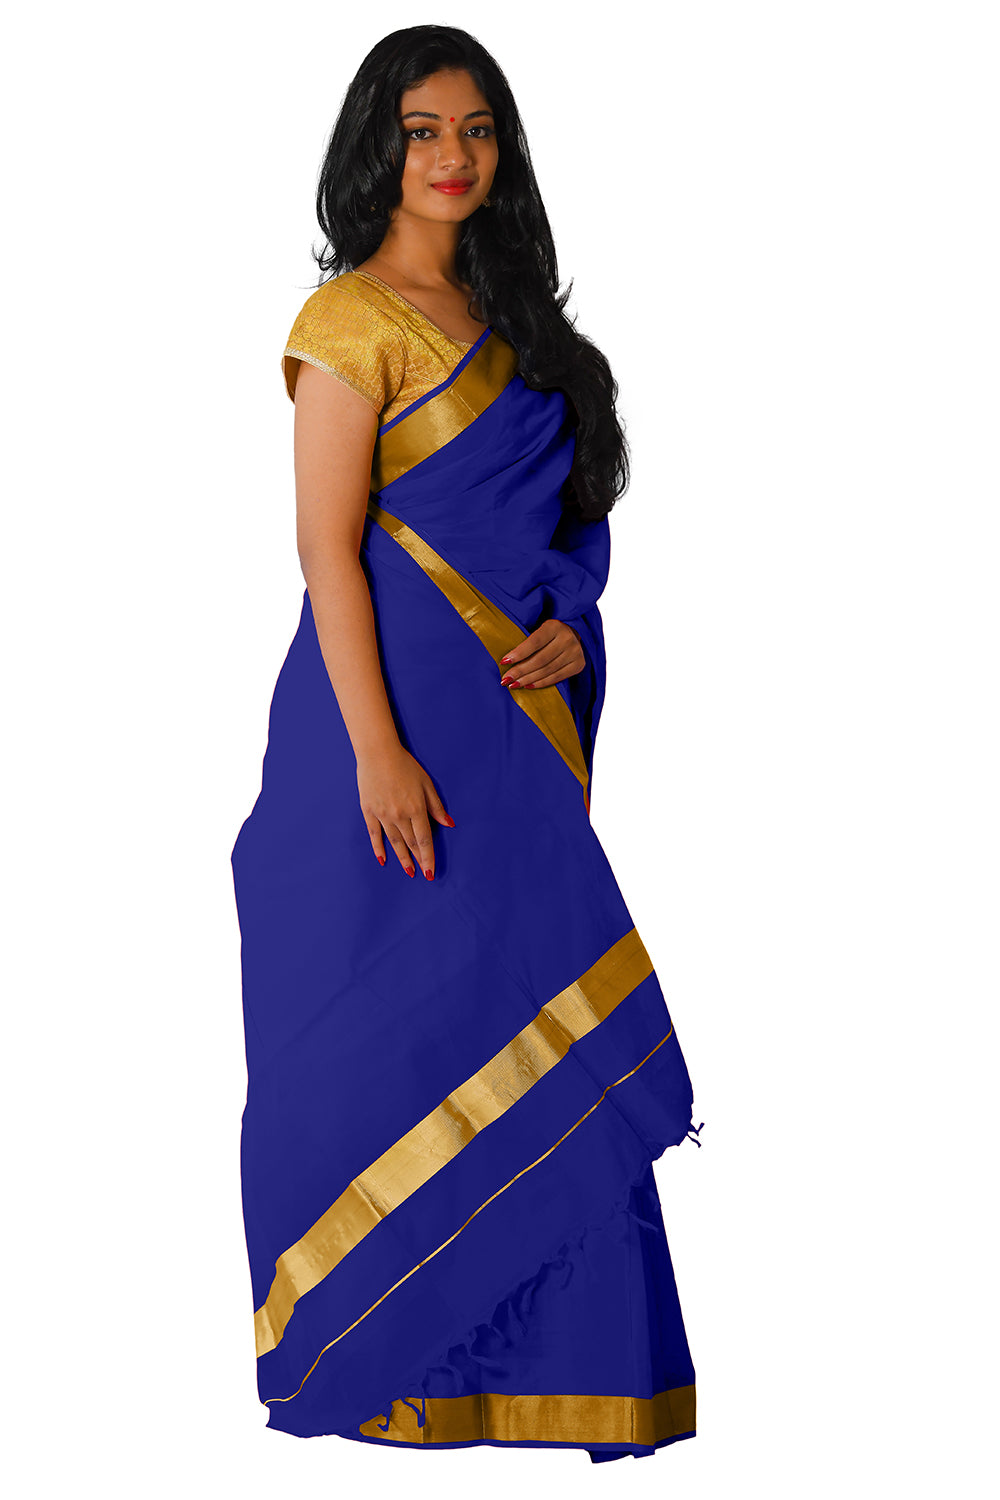 Kerala Traditional Blue Colour Kasavu Saree